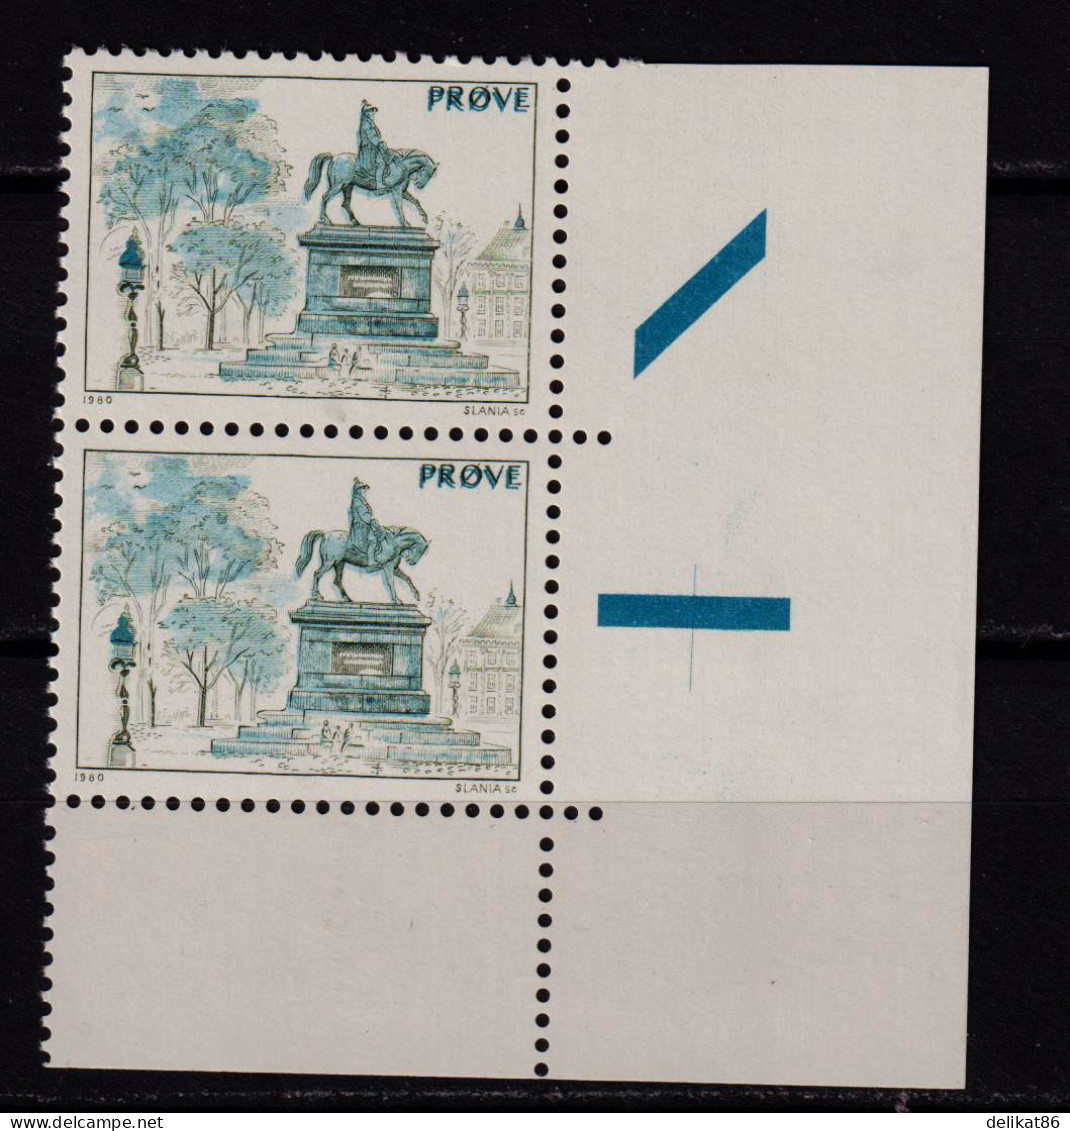 Test Stamp, Specimen, Prove, Probedruck, Reiterstandbild, Slania 1980 - 1985 Doppelmarke Unterere Rand - Probe- Und Nachdrucke